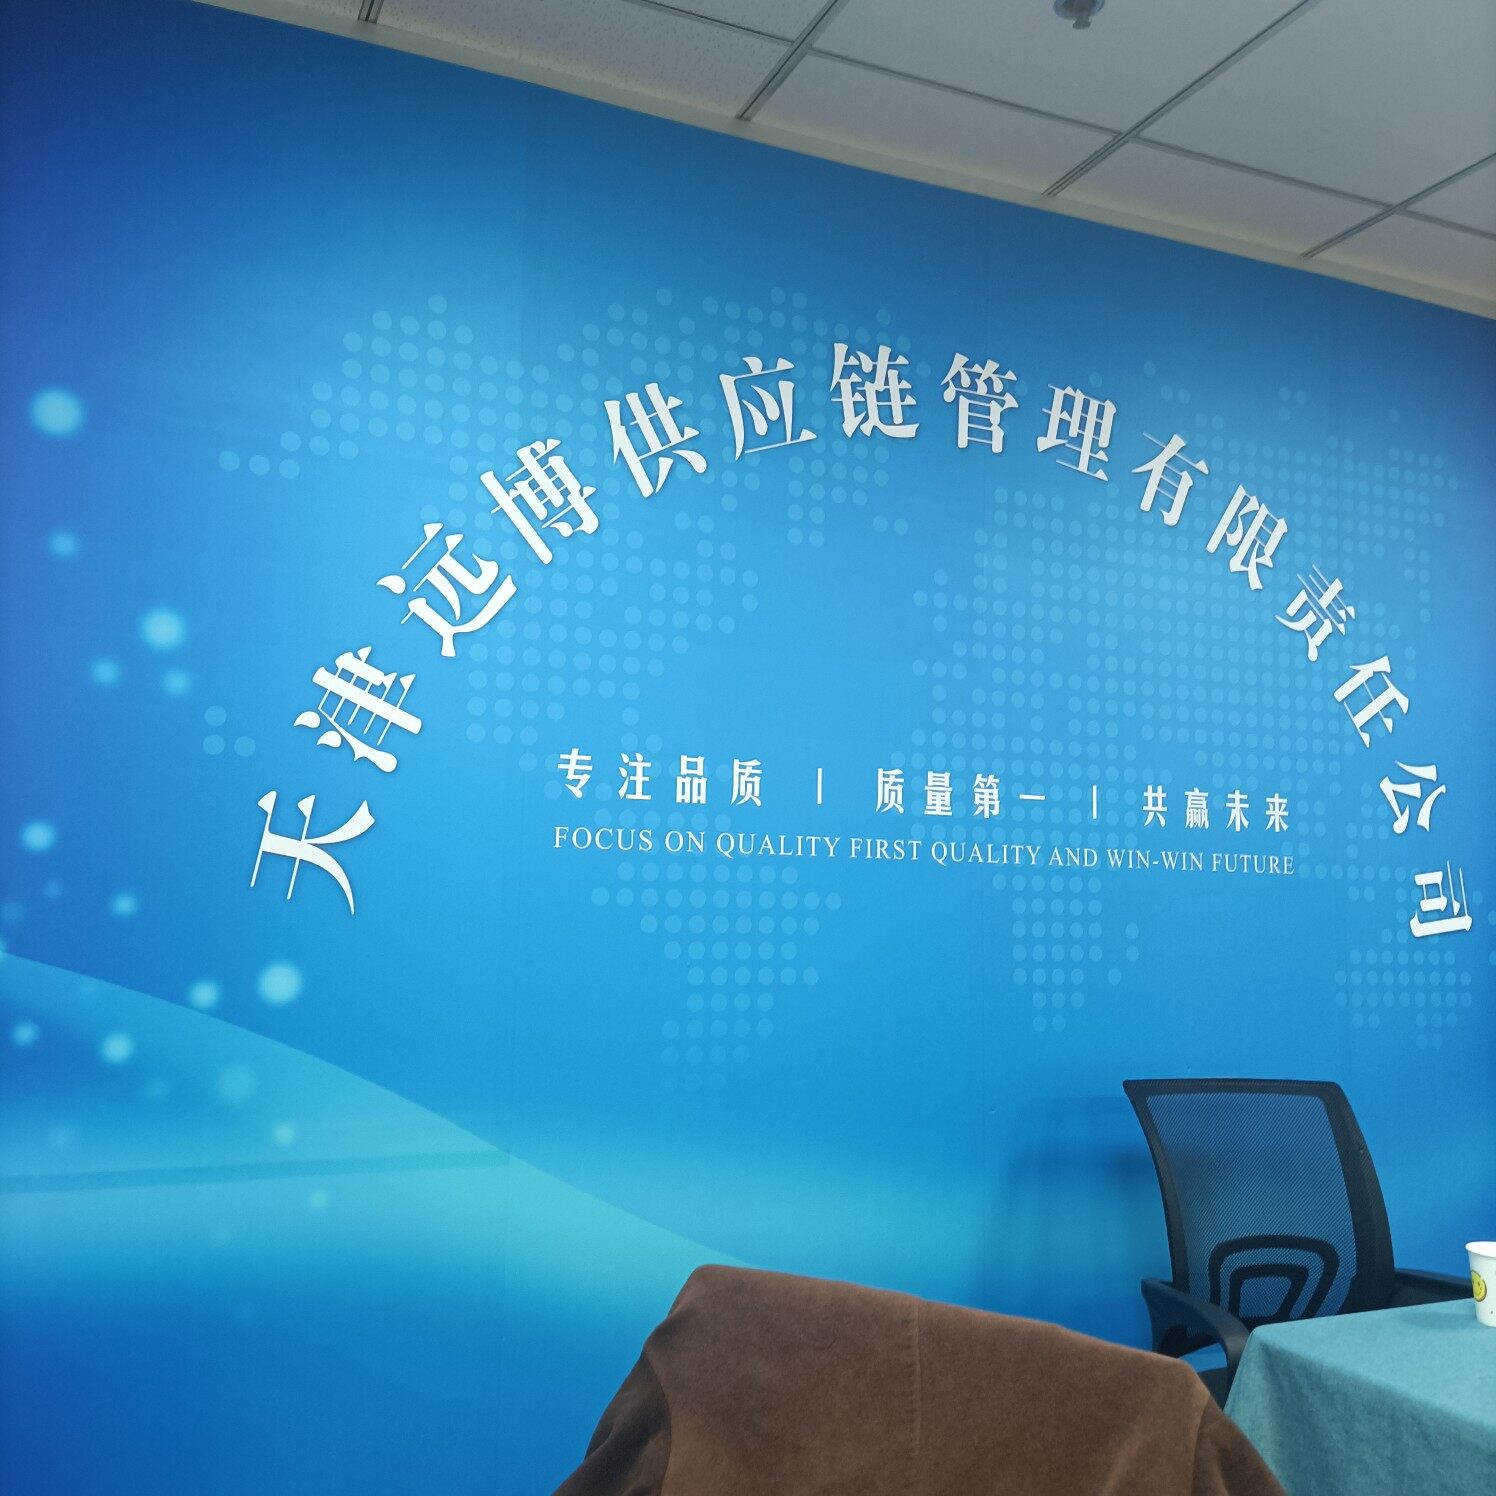 天津远博供应链管理有限公司logo